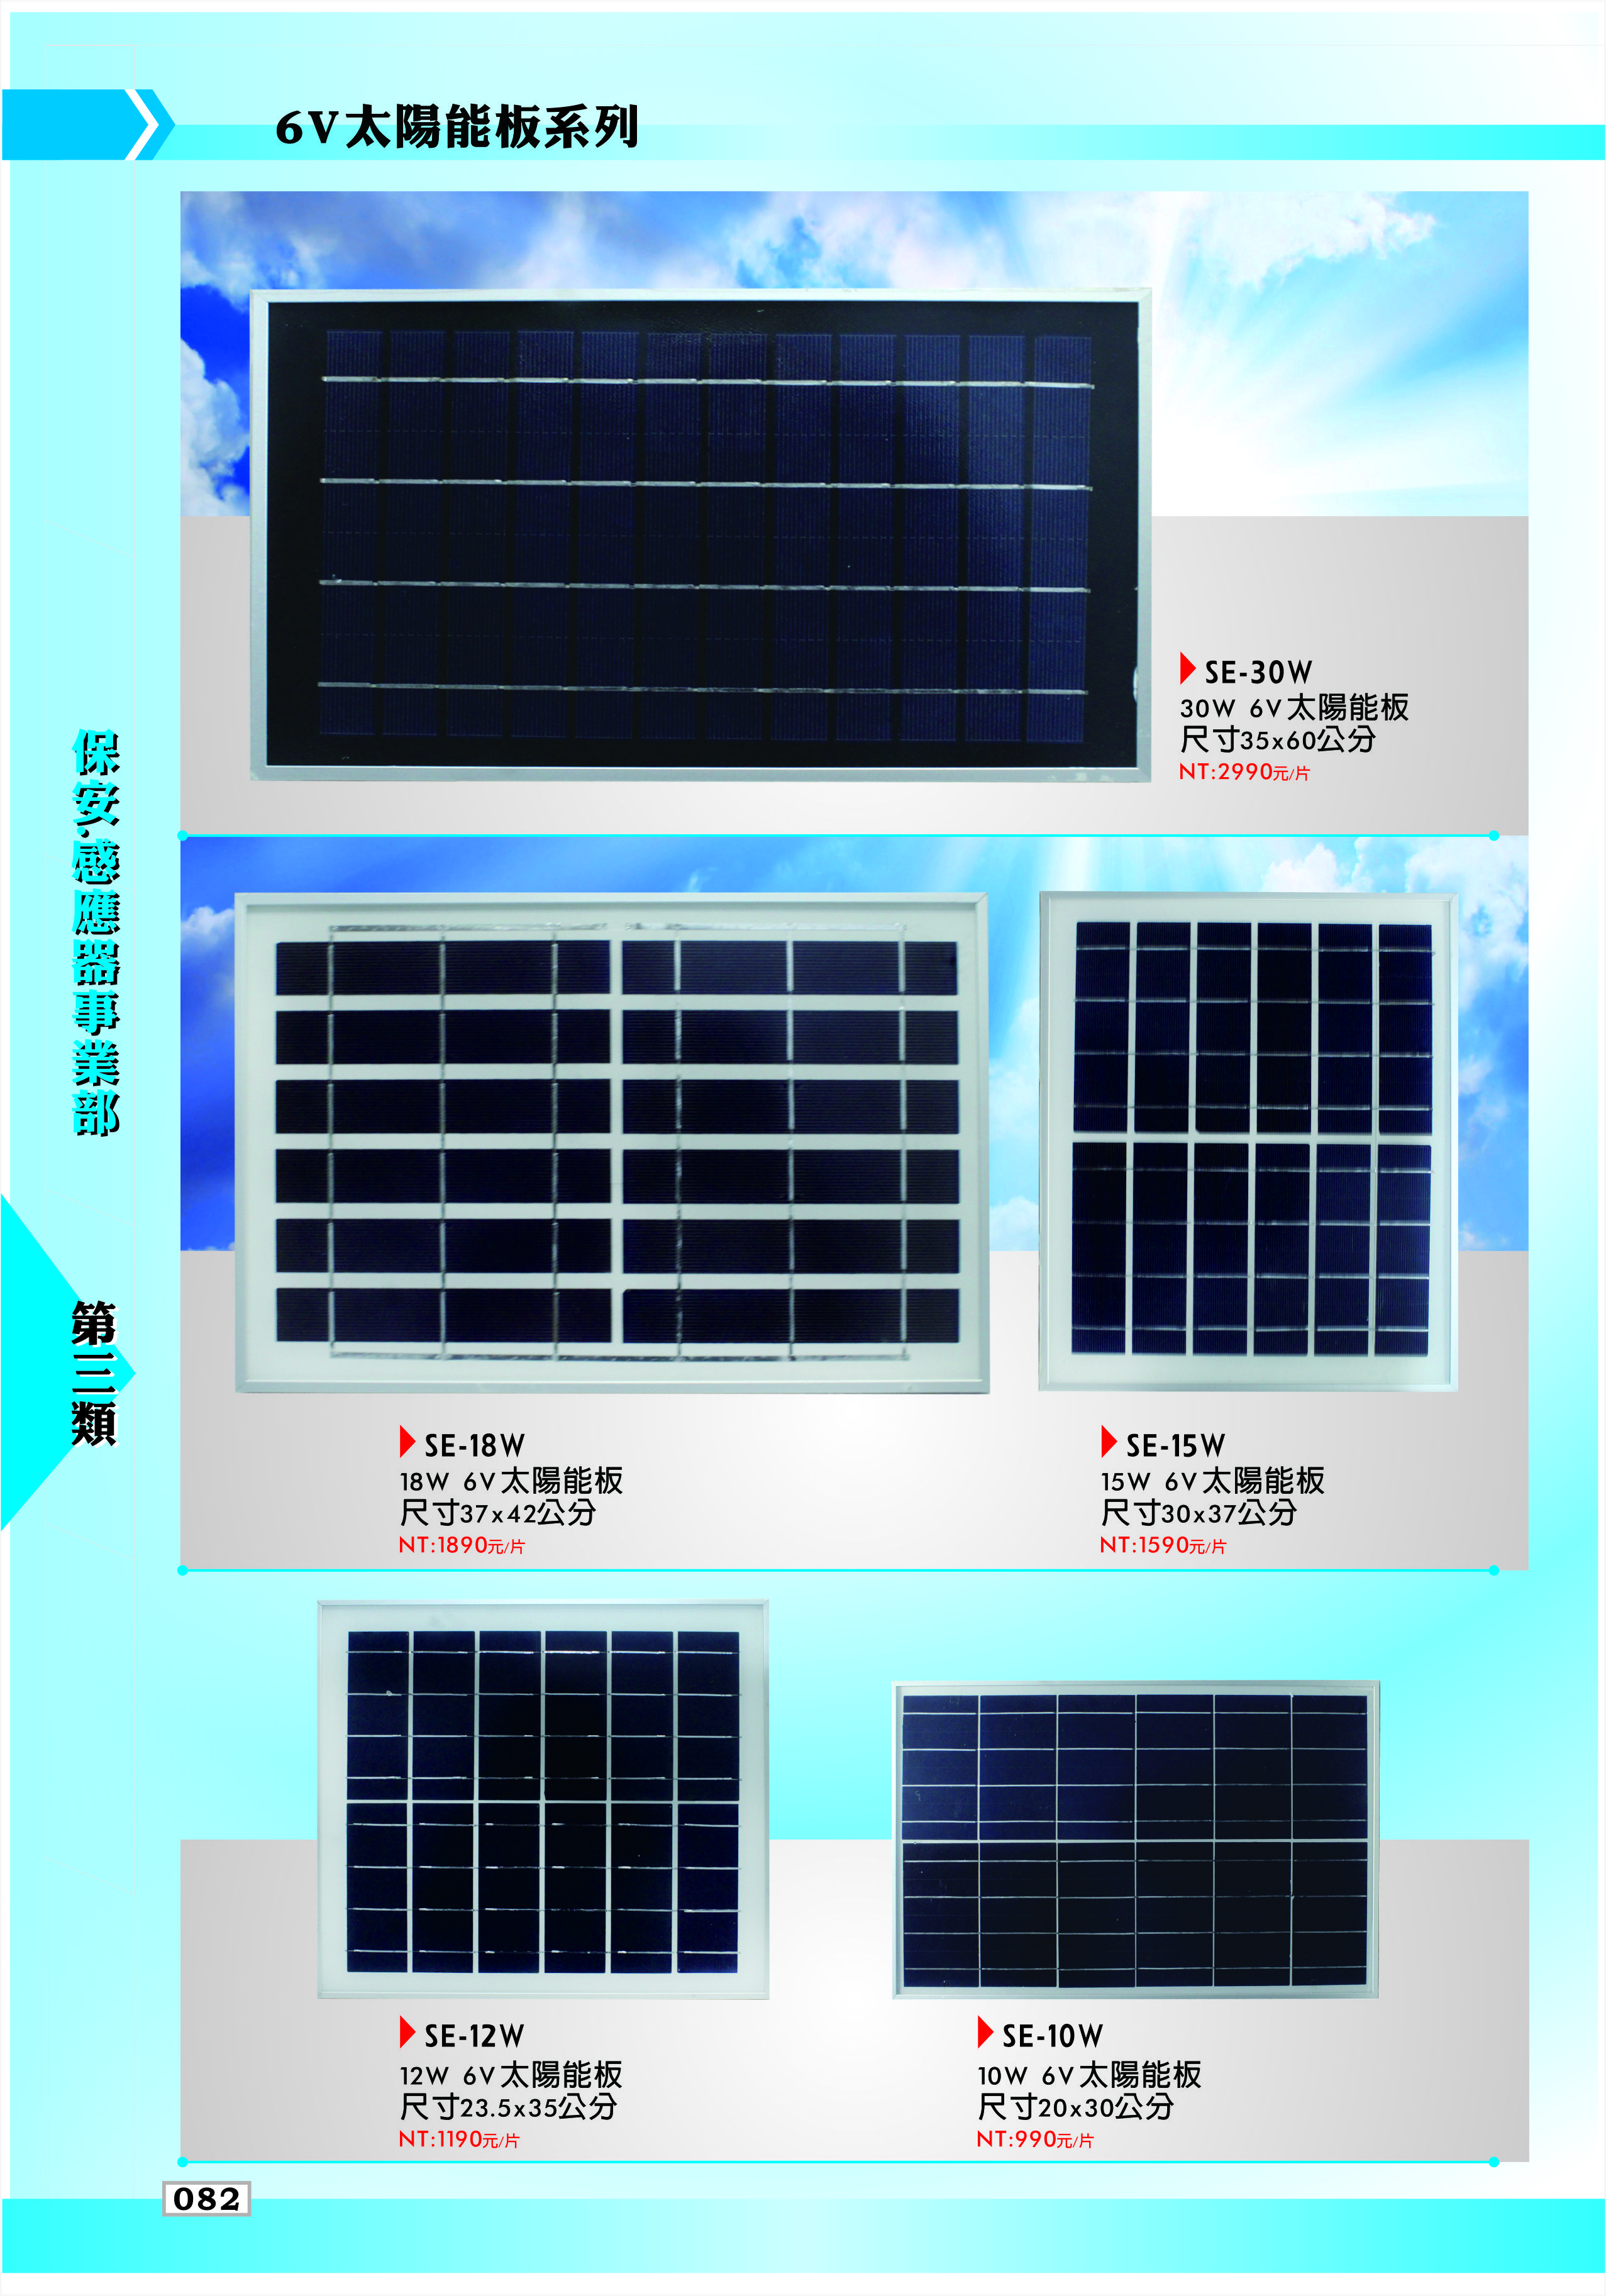 6V太陽能板系列